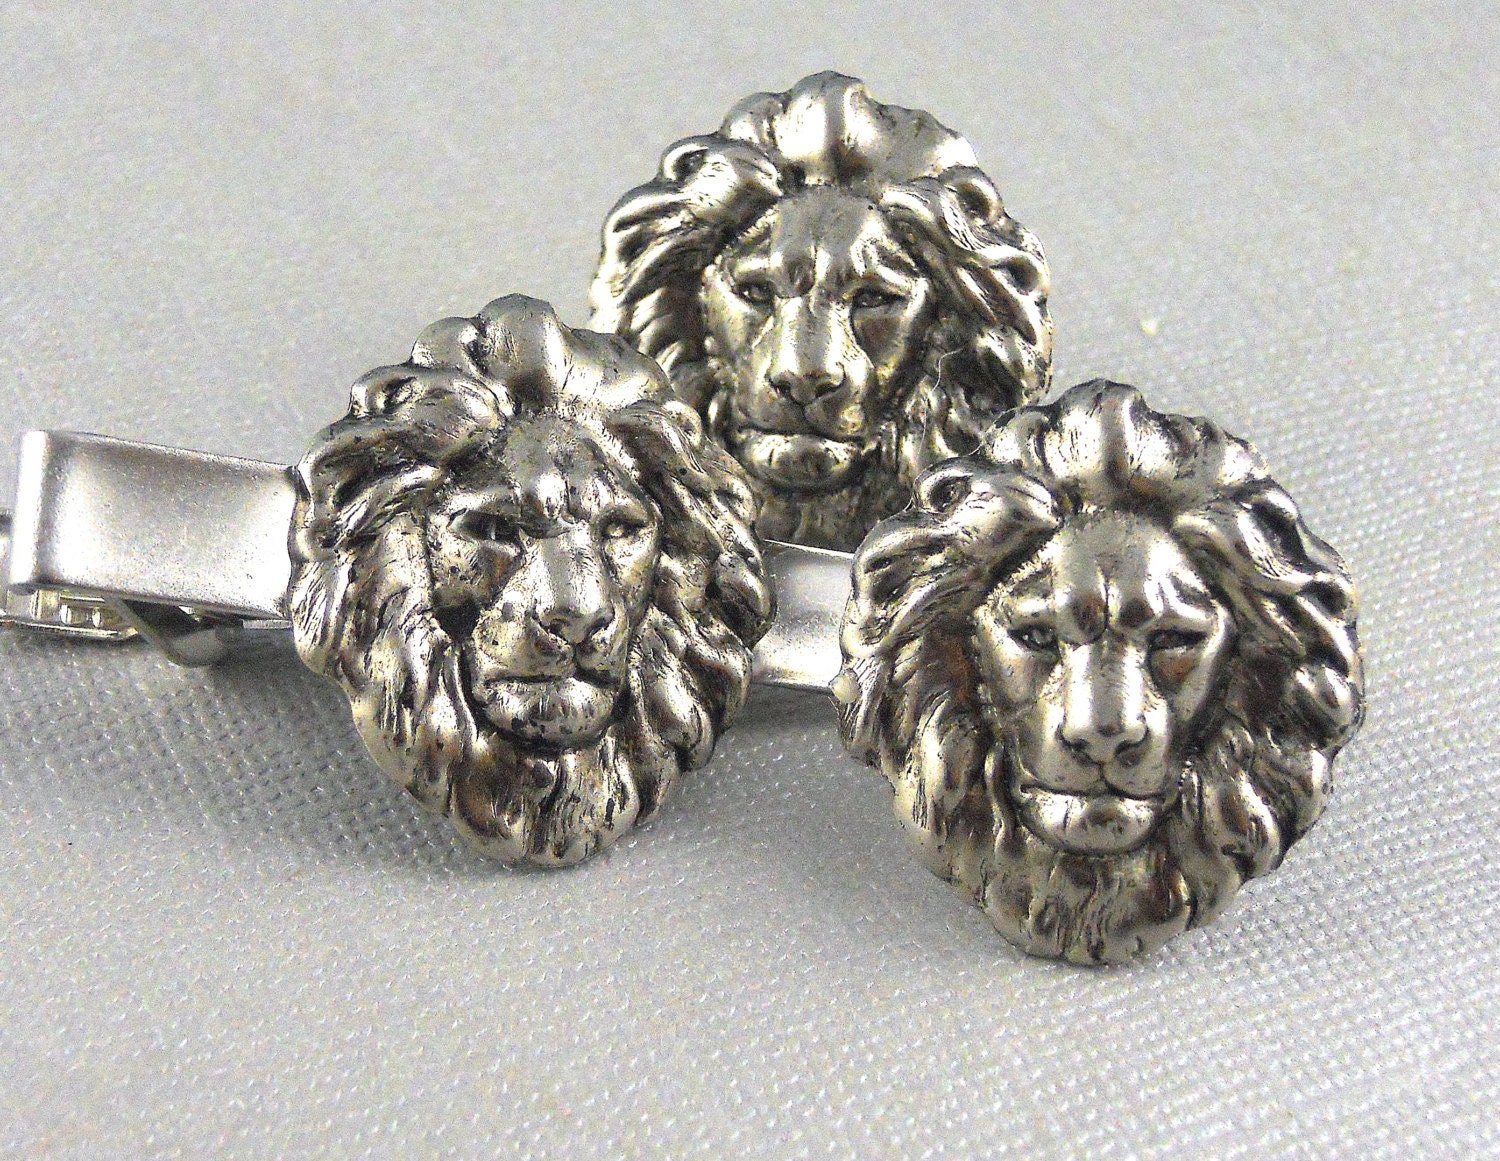 Silver Lion Cufflinks, Lion, Cufflink, Silver LionTie Clip, Tie Bar, Wedding, Lion, Vintage Gothic Inspired